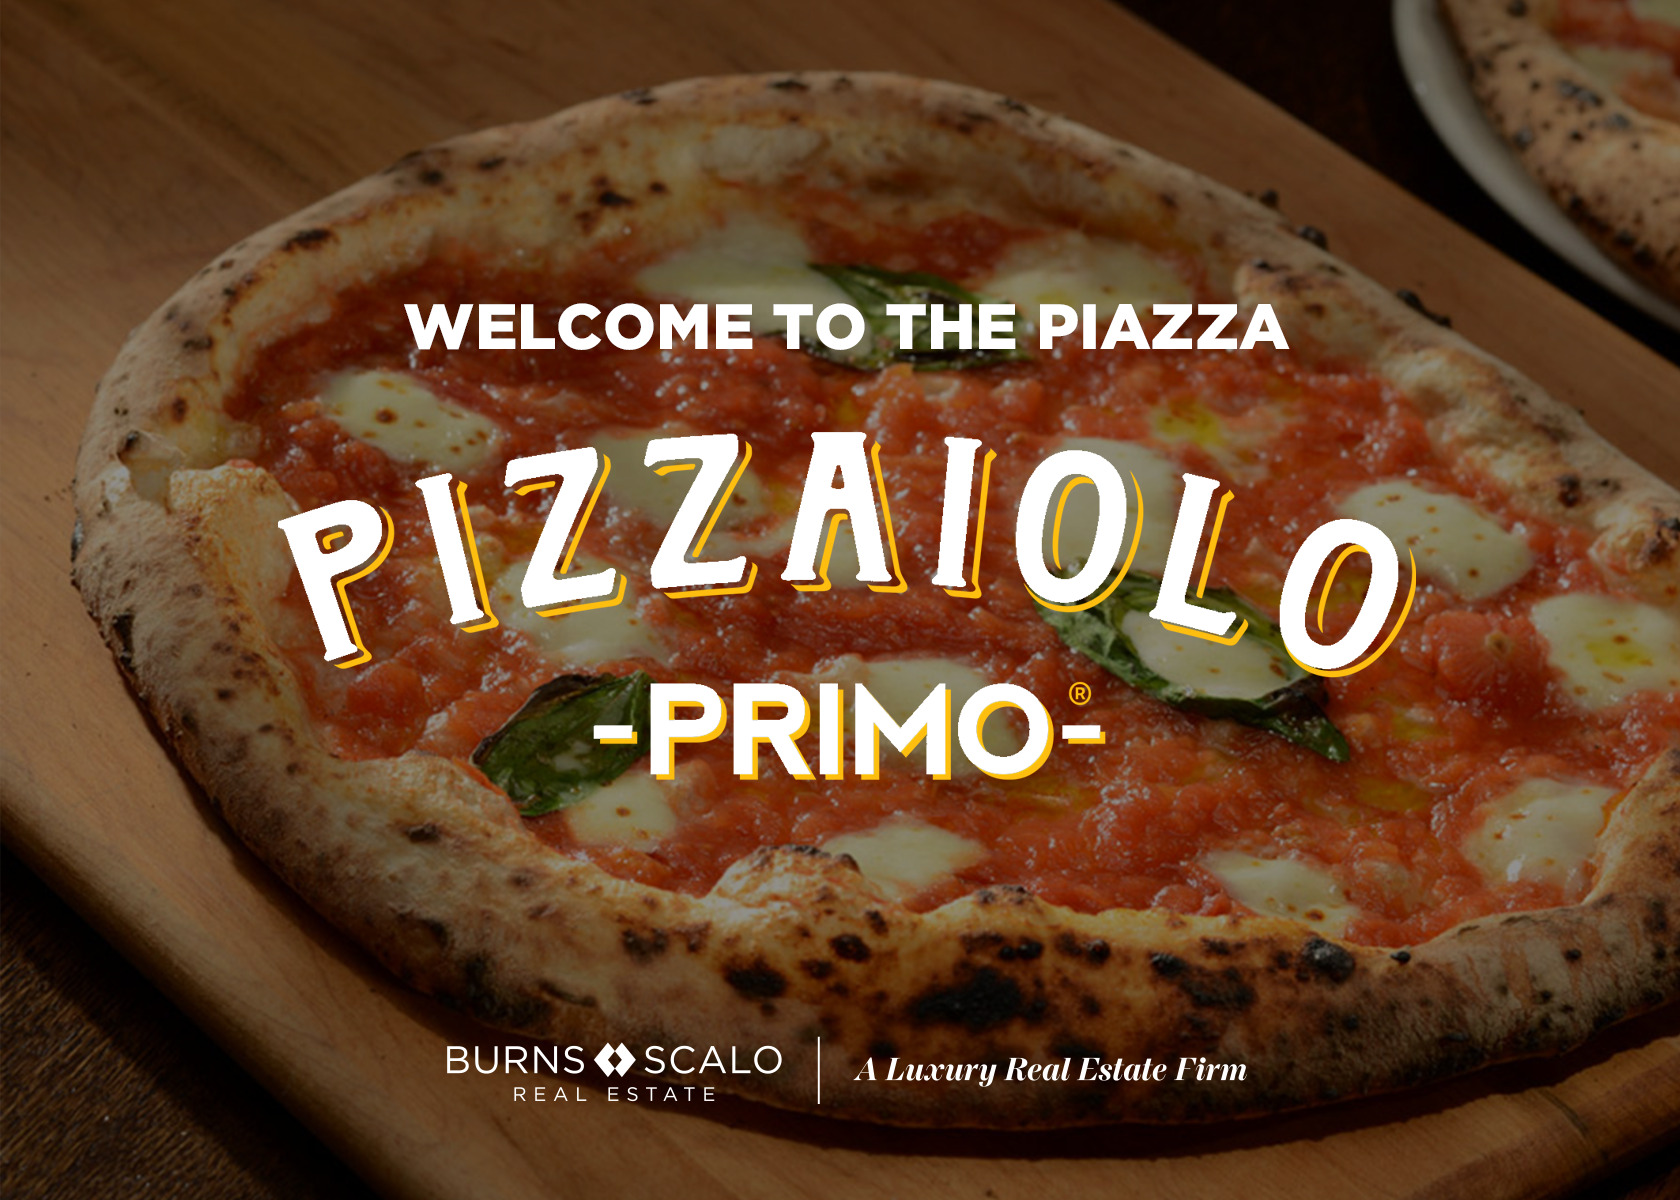 Pizzaiolo Primo ad for Burns Scalo